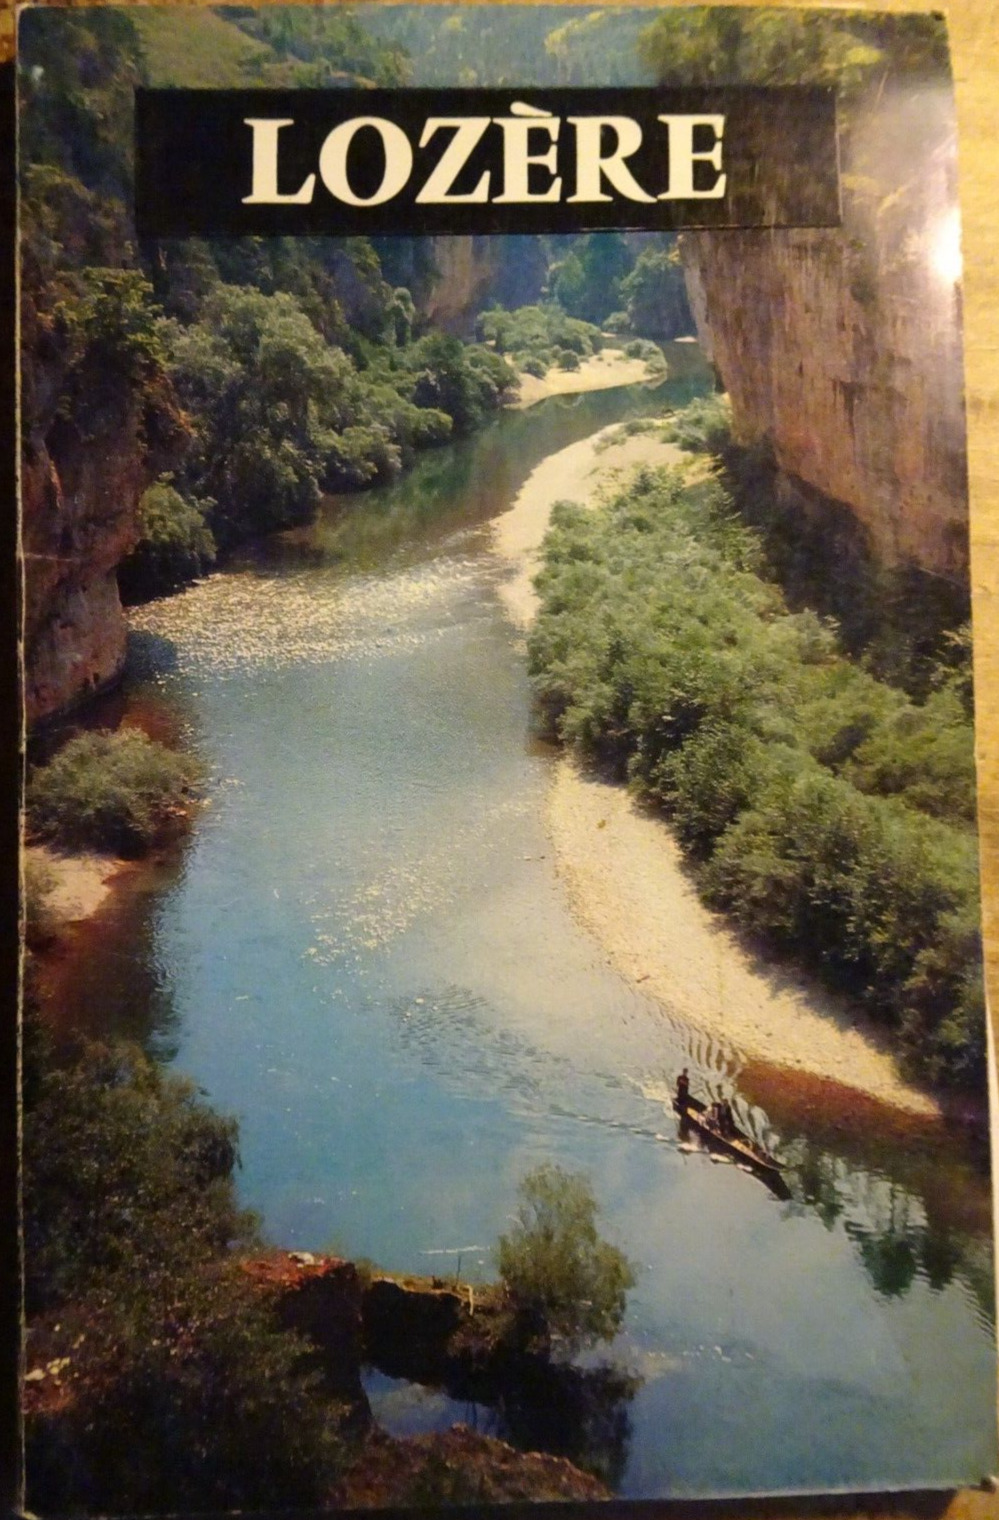 Lozère | Inter-Guide France °48 - 4th edition | Larrieu-Bonnel 1969